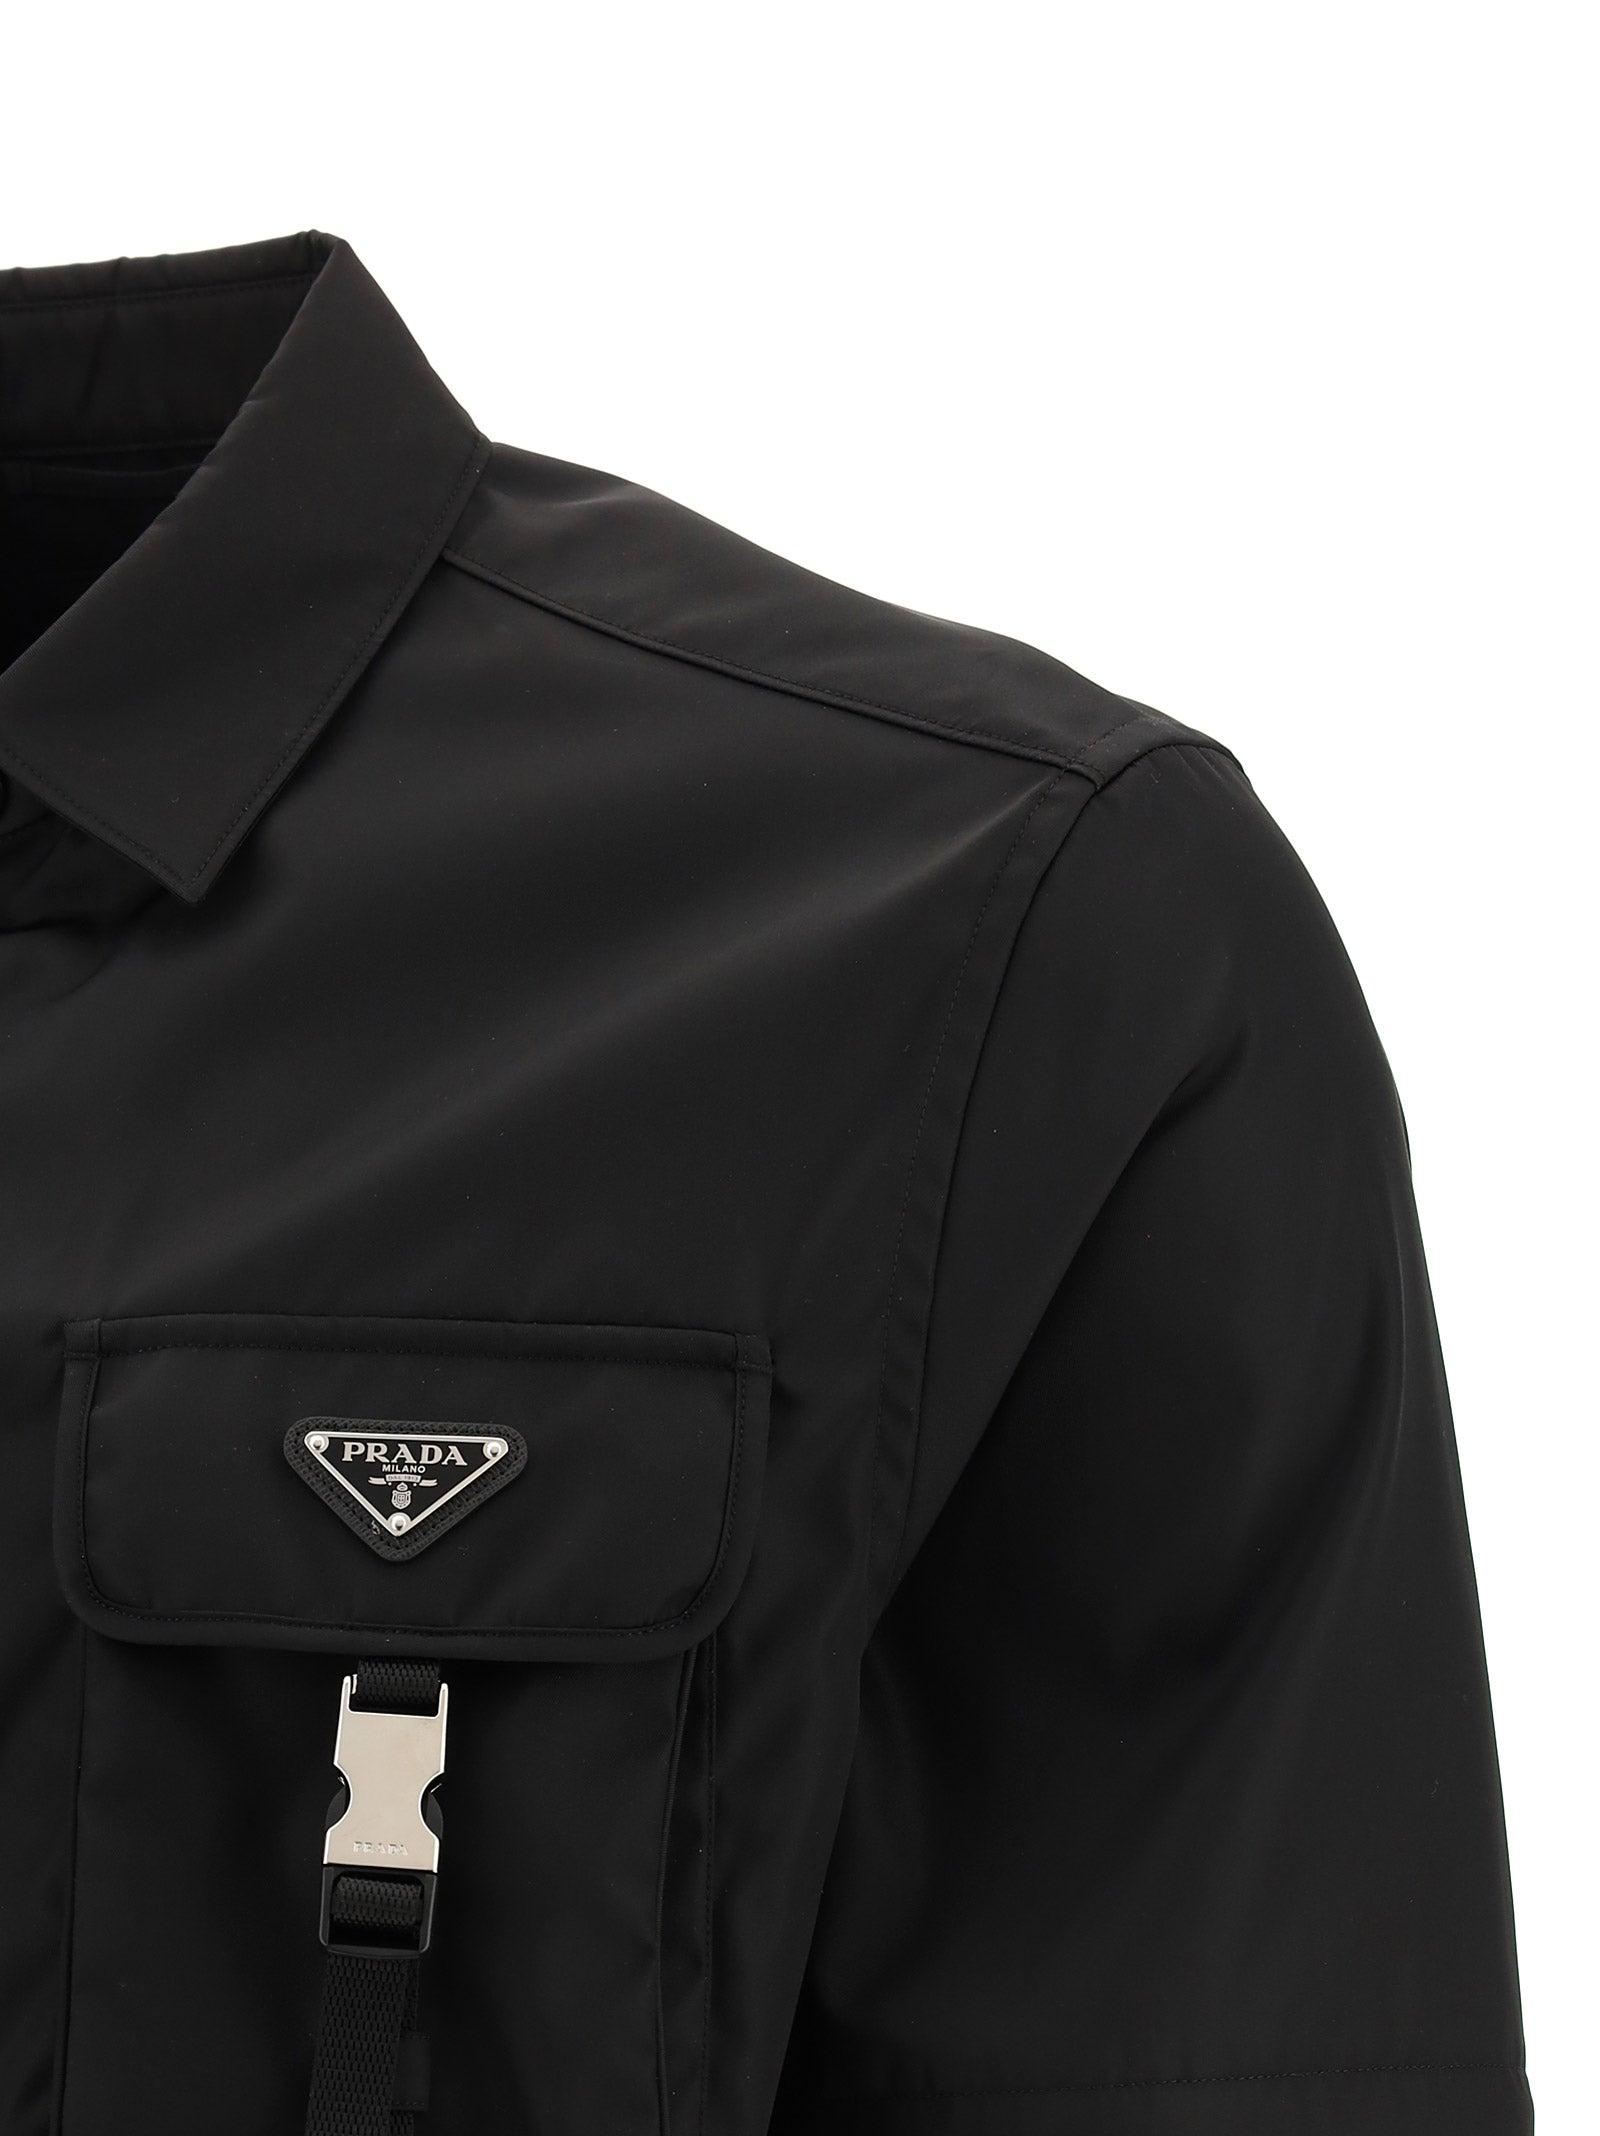 Prada Synthetic Re-nylon Long Sleeve Shirt in Black for Men - Lyst